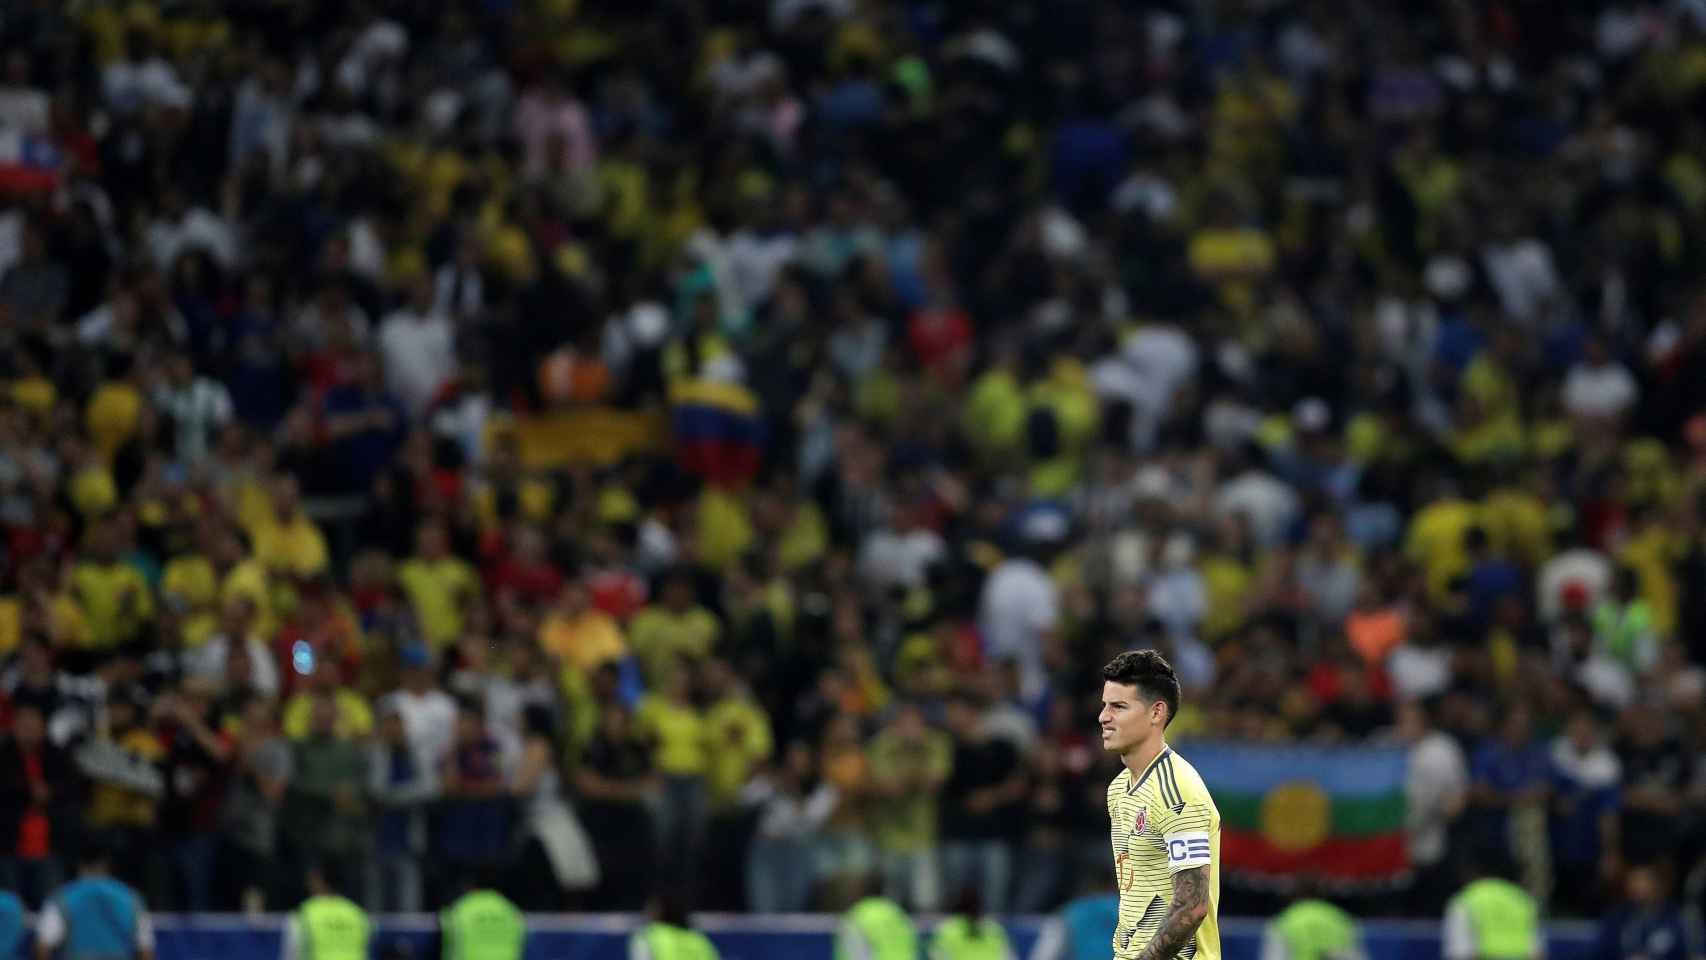 James Rodríguez, tras caer eliminado en la Copa América con Colombia